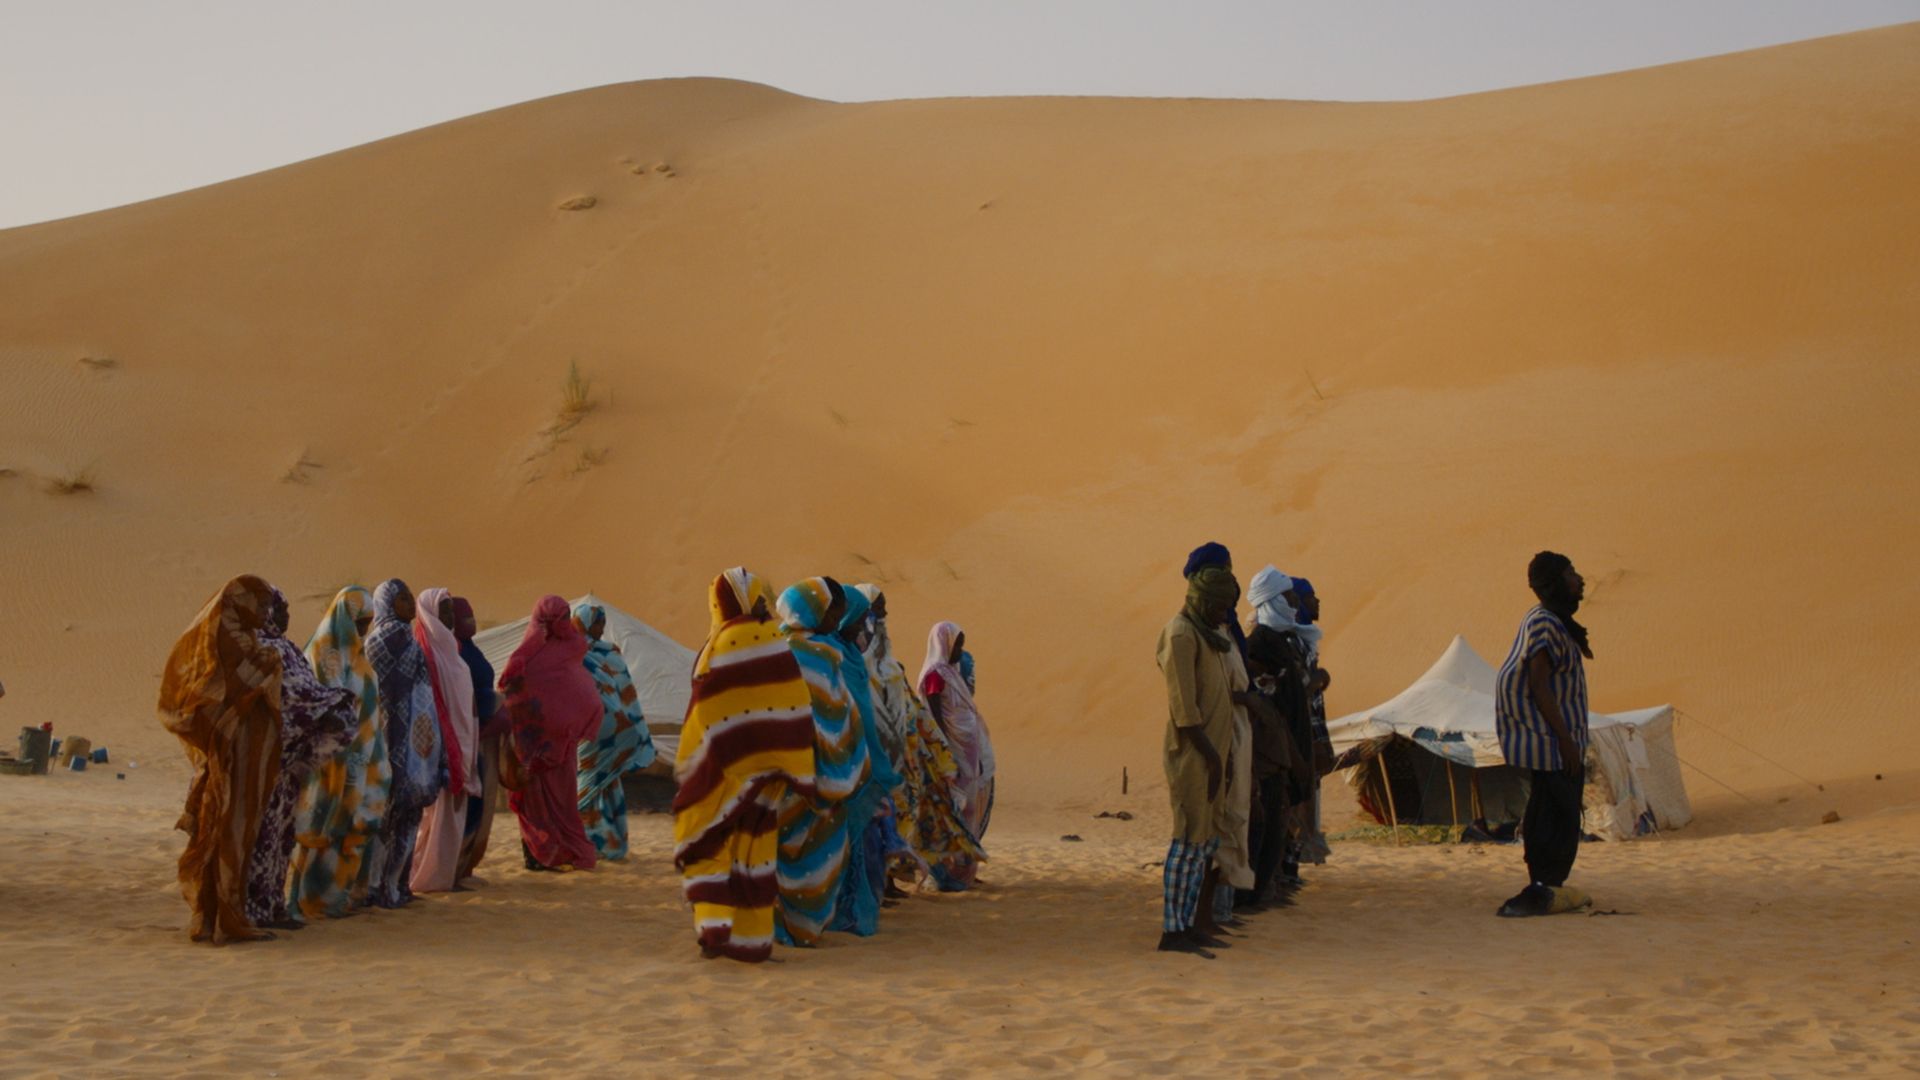 grupa ludzi na afrykańskiej pustynia, w strojach tego regionu.